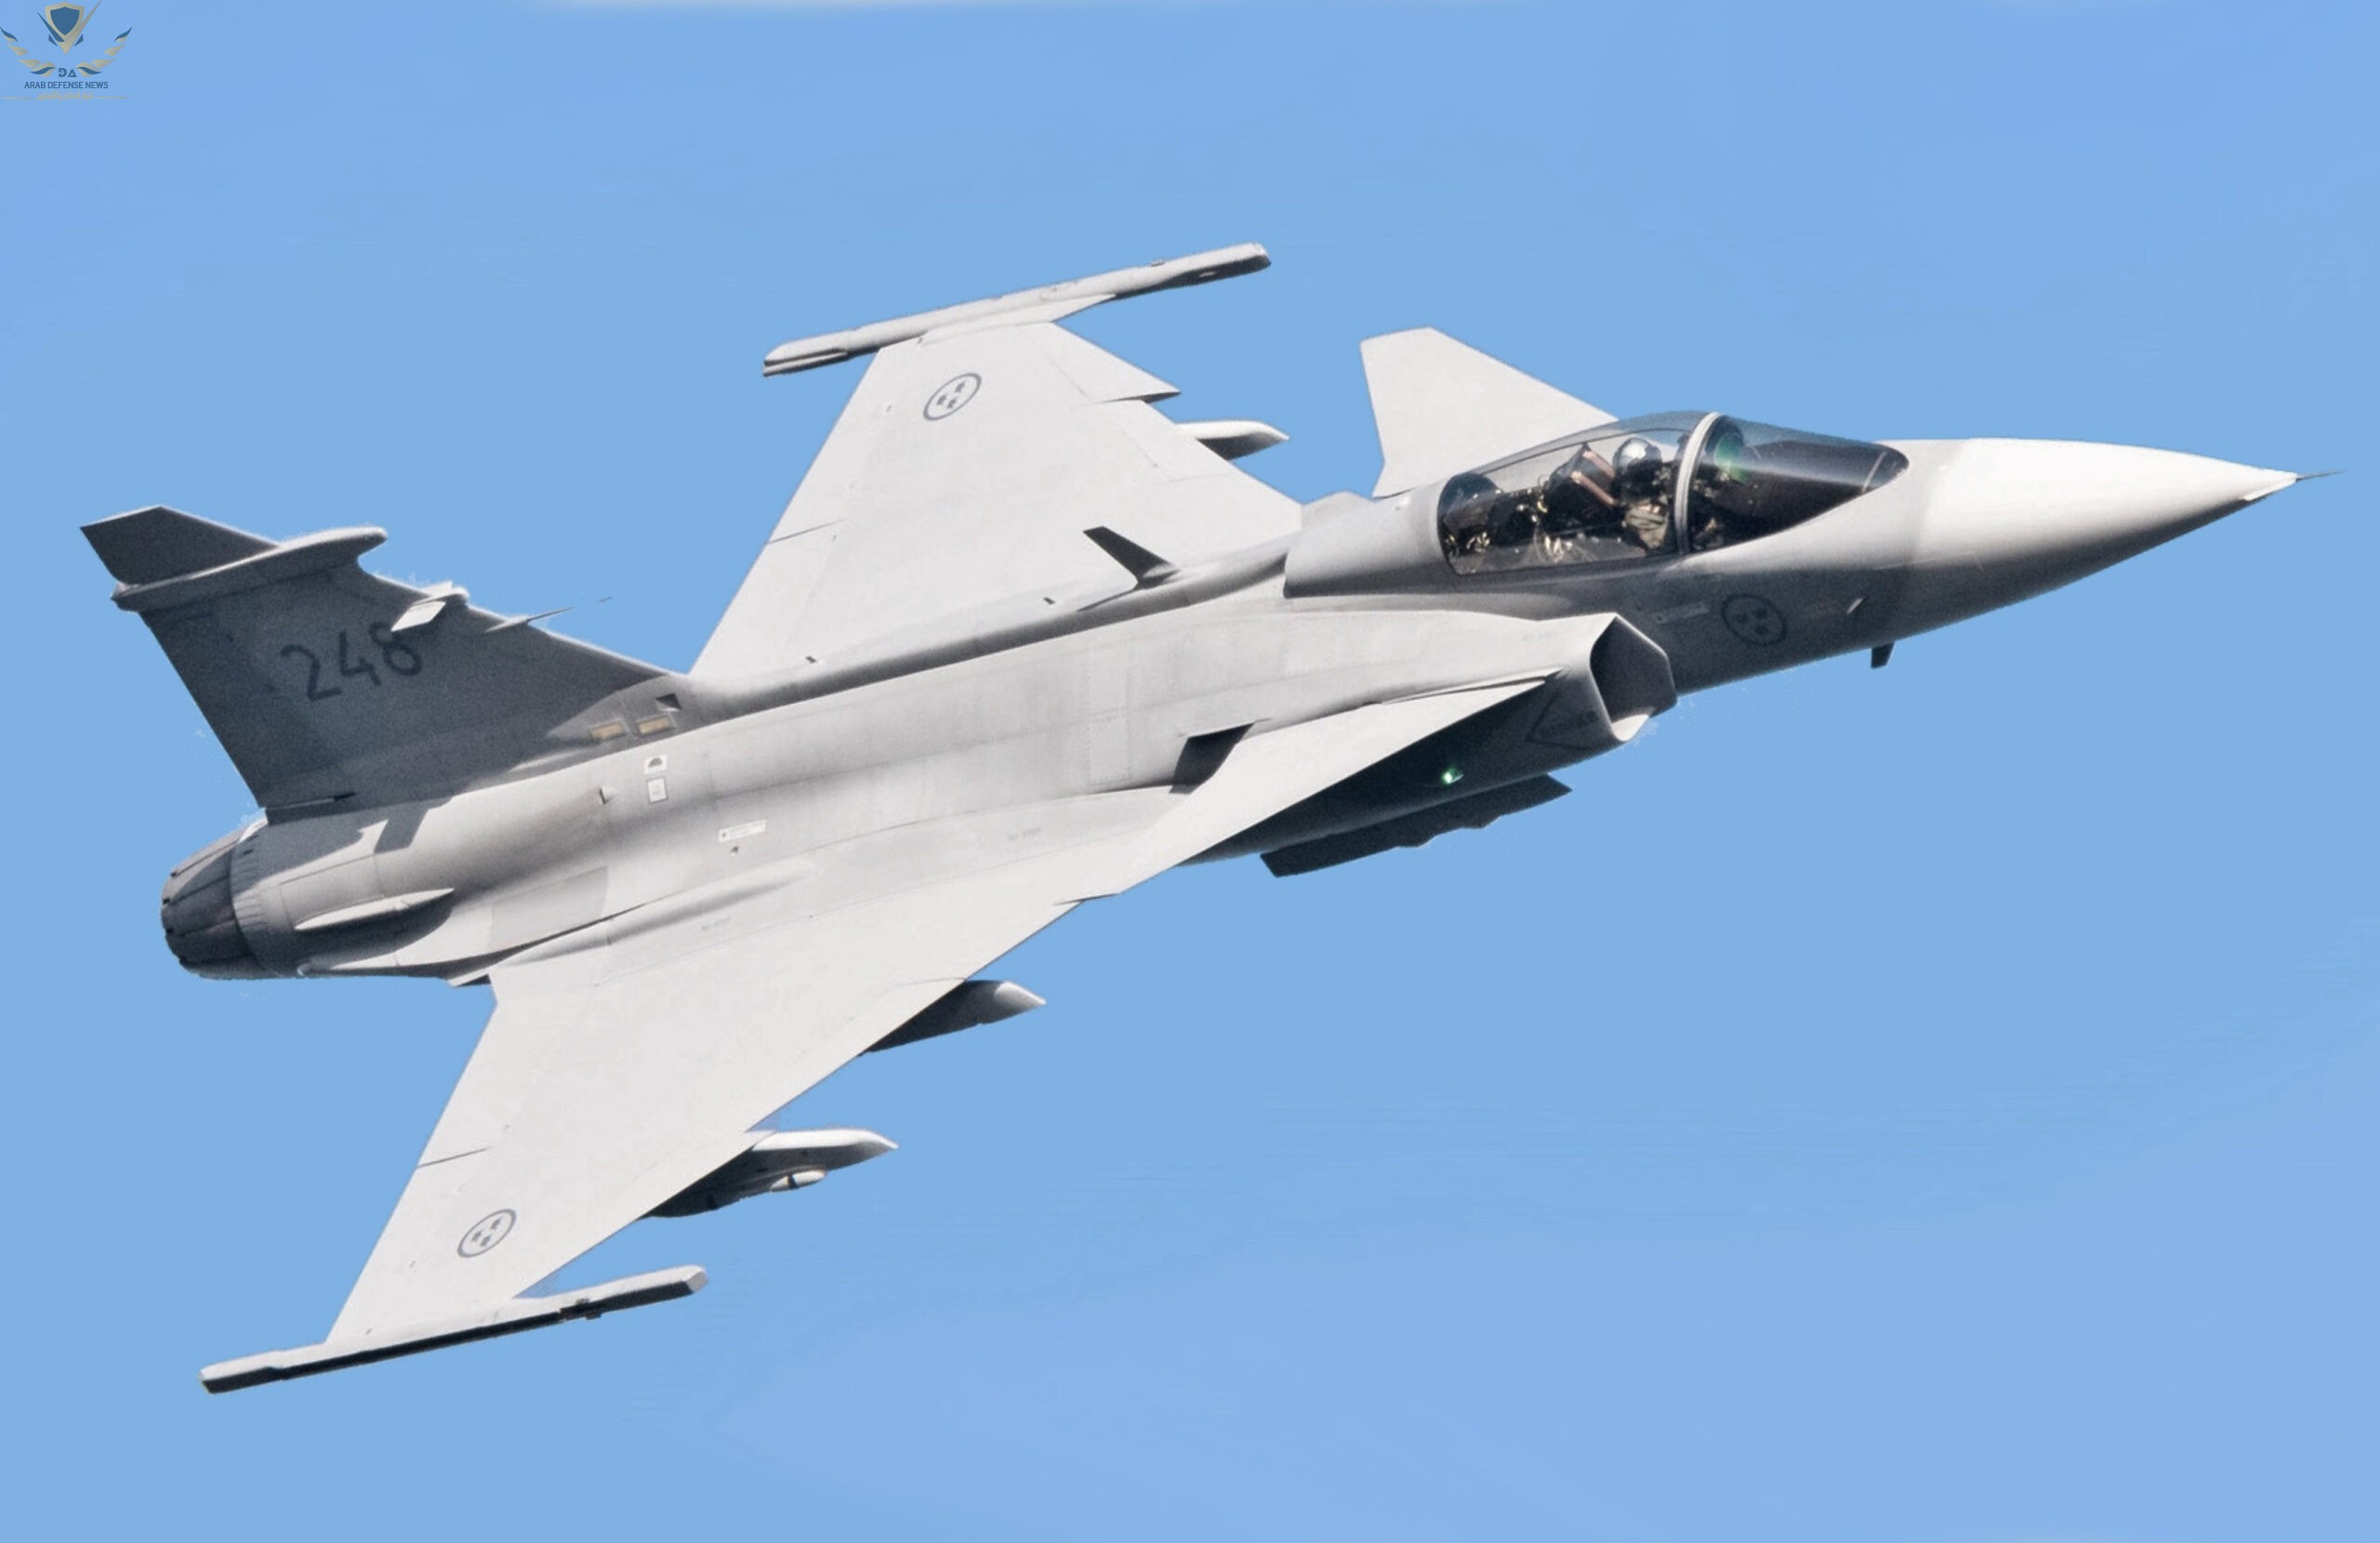 السويد تدرس توريد طائرات مقاتلة من طراز Gripen إلى أوكرانيا